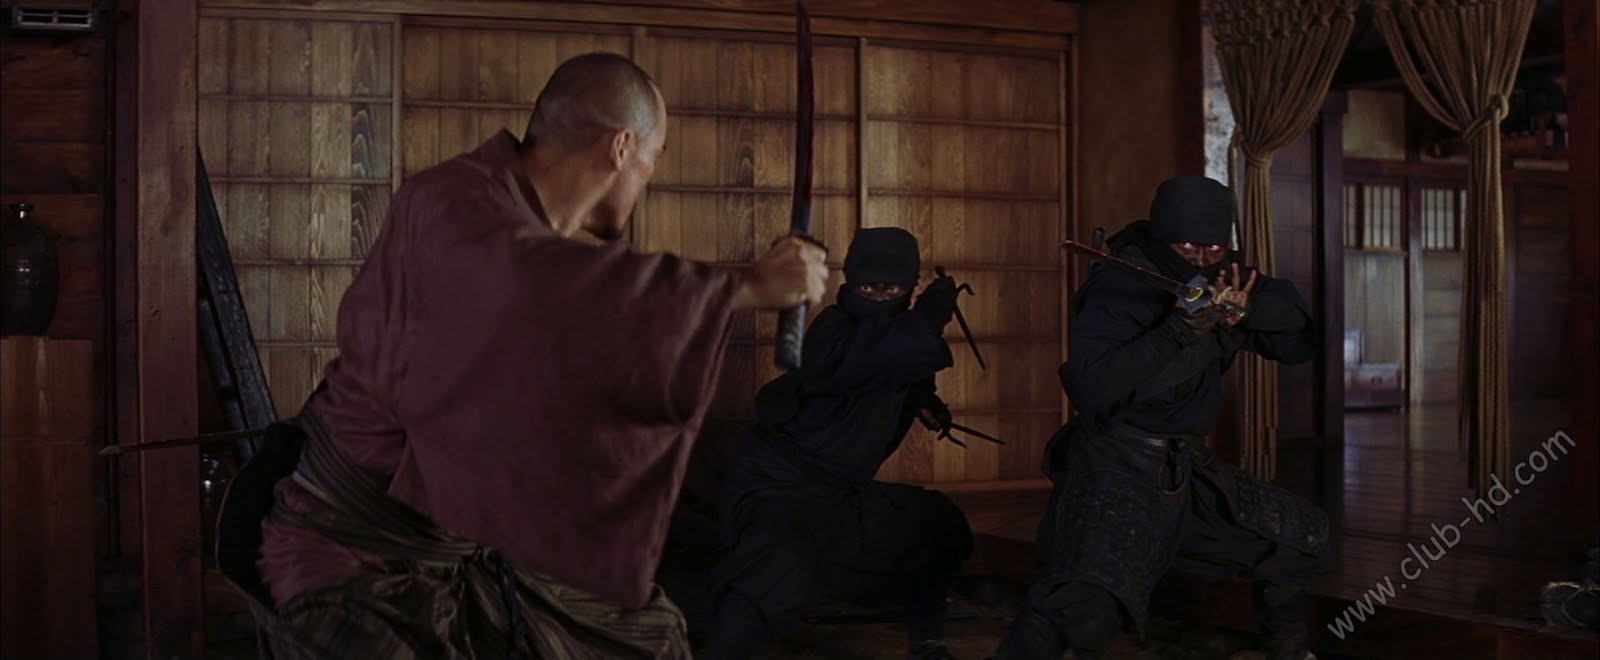 The Last Samurai (2003) 1080p BDRip Dual Latino-Ingles [Subt. Esp-Ing] (Aventura. Acción)